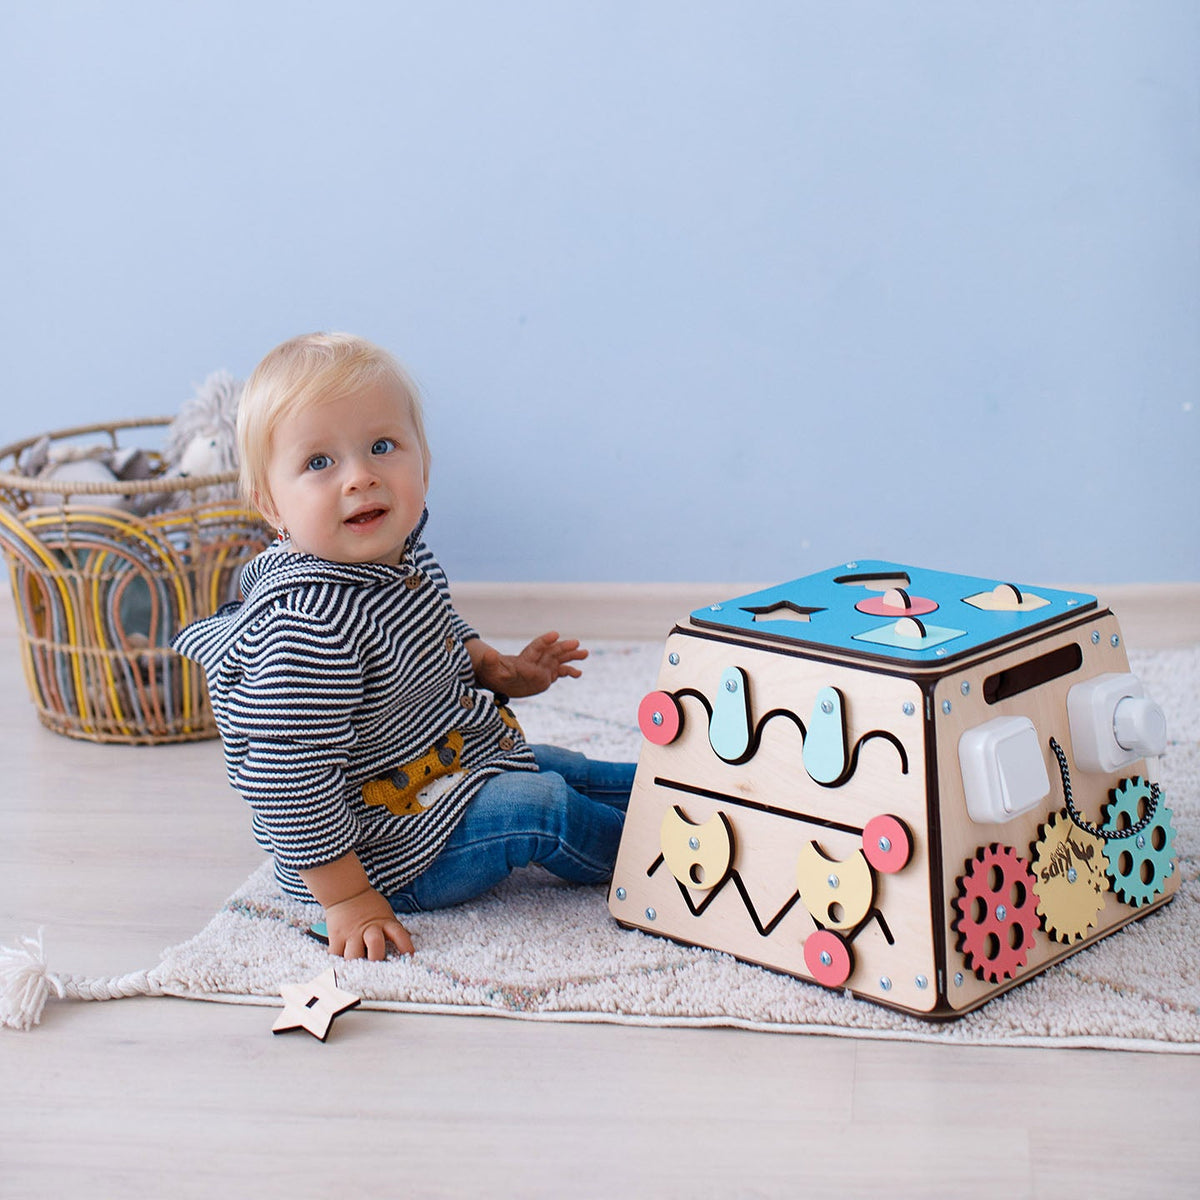 Lavagna per attività, Montessori® Giocattolo in legno, giocattolo educativo